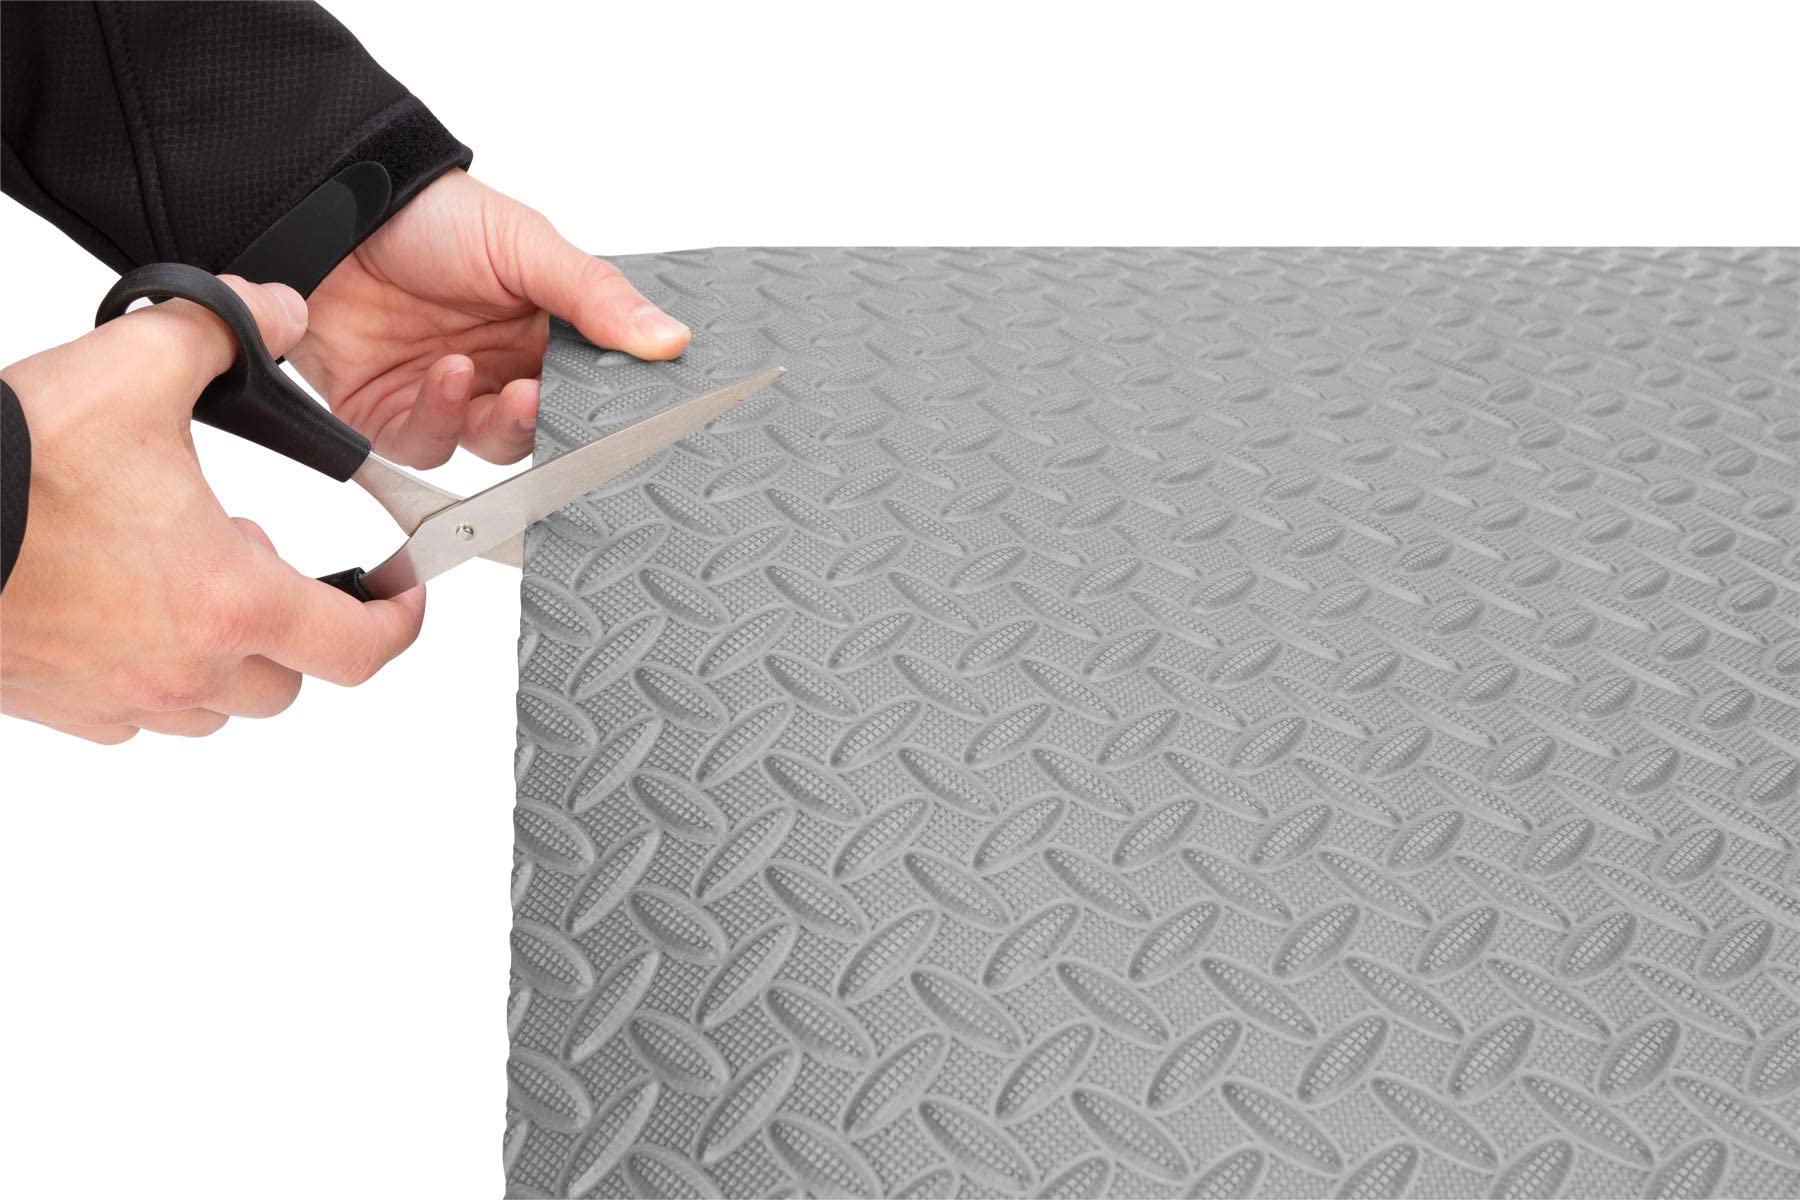 VIO Anti-Fatigue Grip Mat Roll 12 square feet, Grey